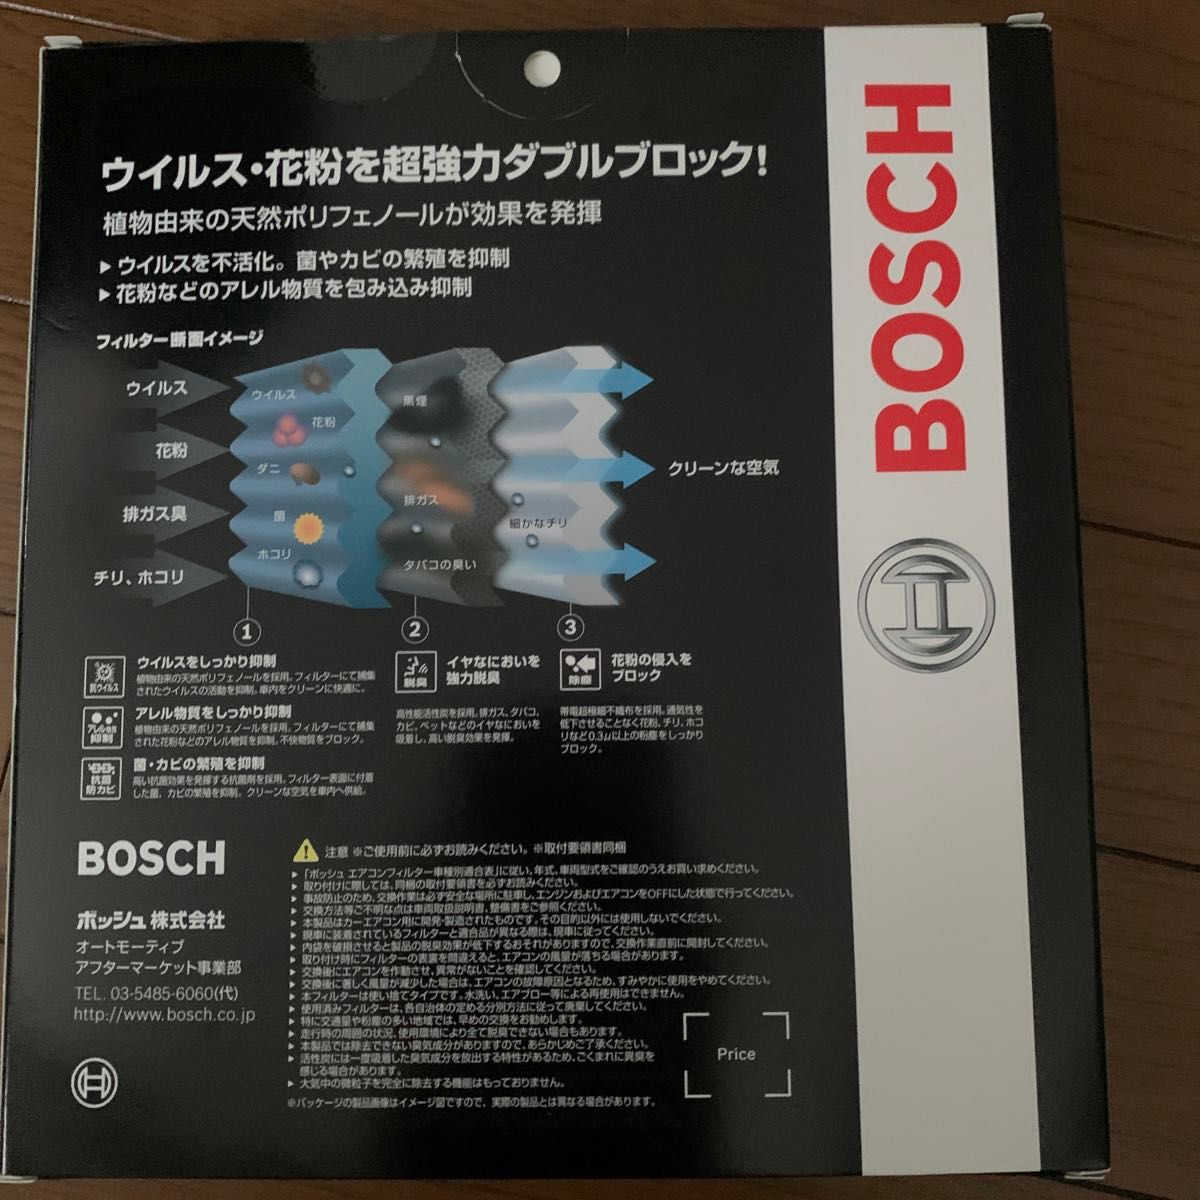 BOSCH(ボッシュ) スズキ/ミツビシ車用エアコンフィルター アエリストプレミアム (抗ウイルス・抗アレルタイプ) APーS11